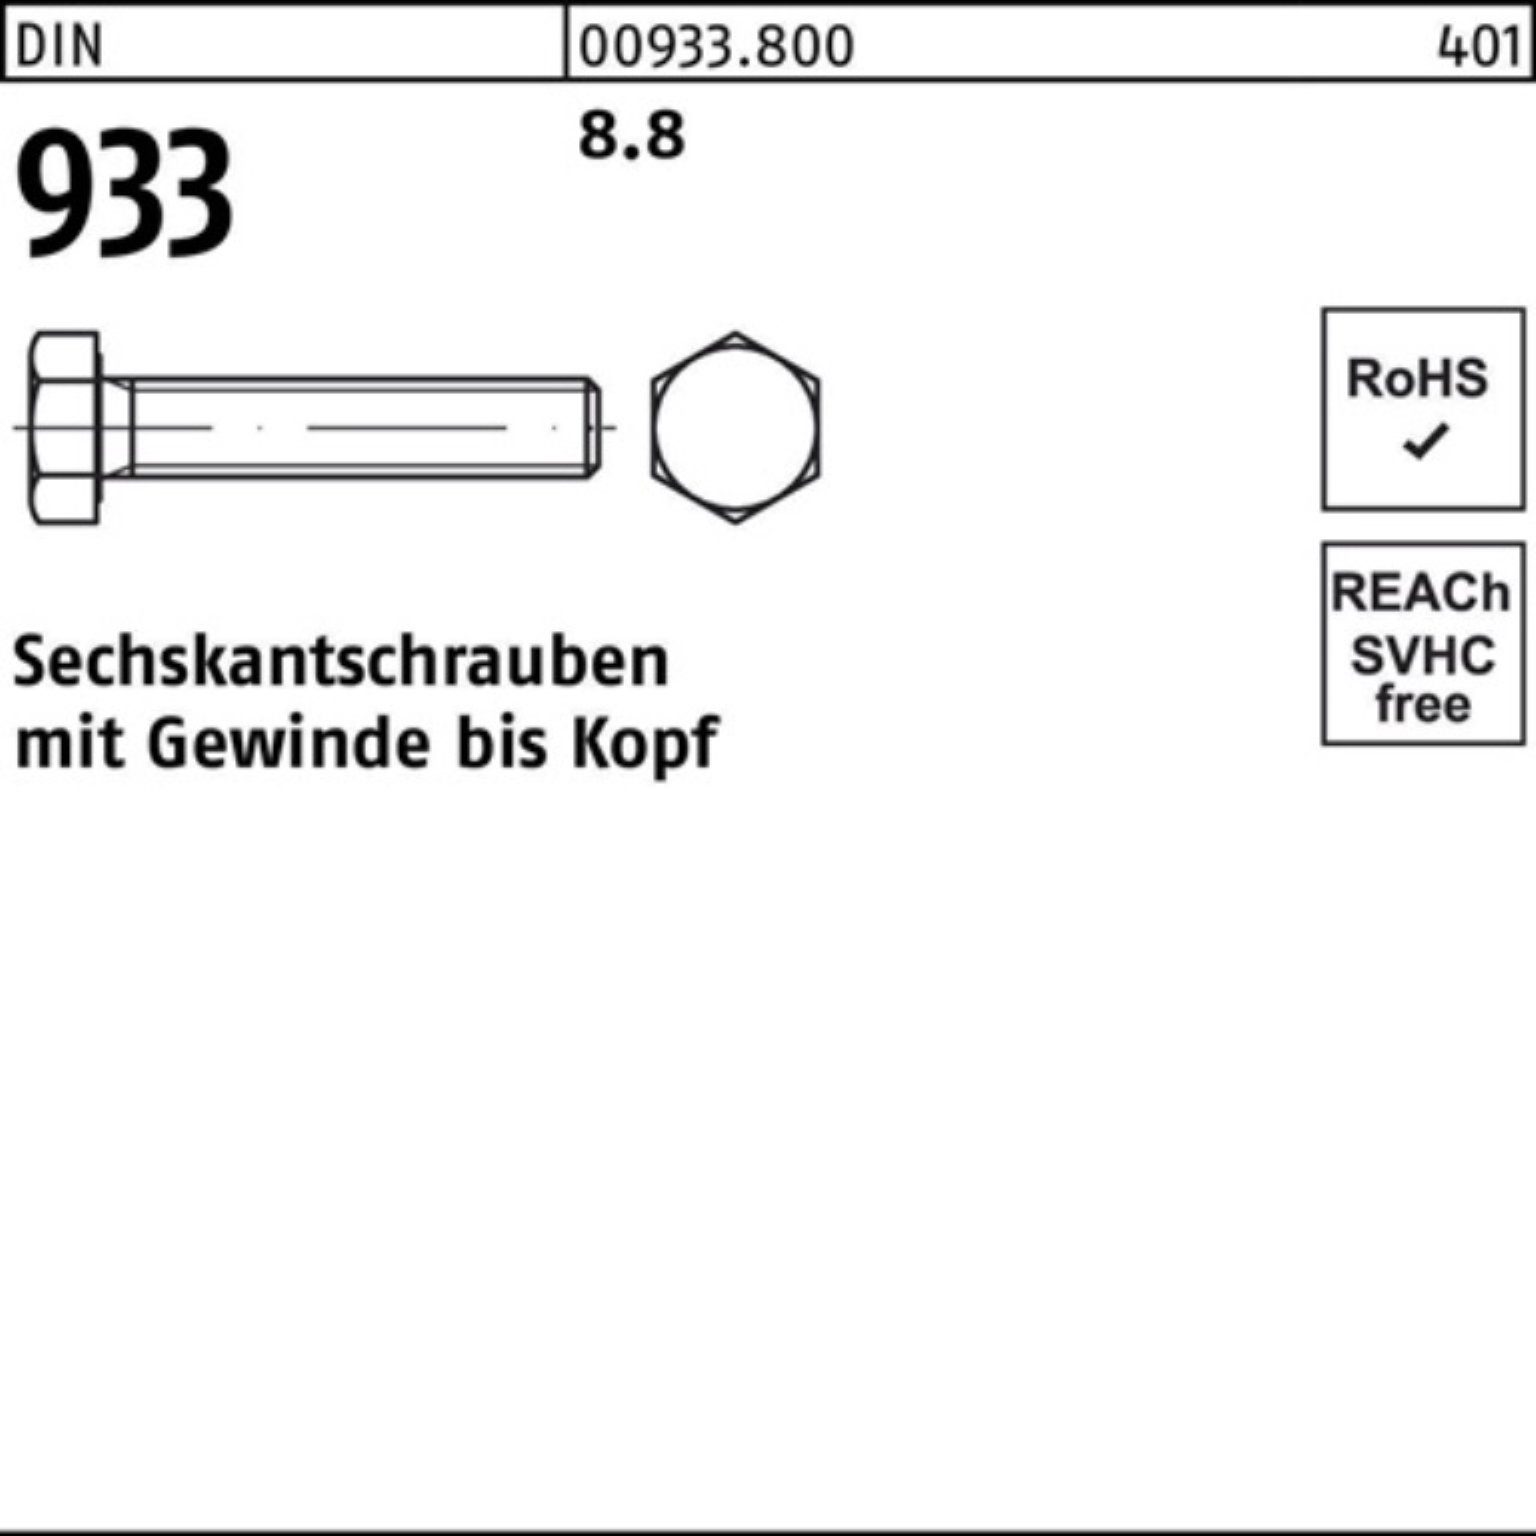 Reyher Sechskantschraube 200er DIN M7x DIN 8.8 Stück 45 VG 933 Pack 933 Sechskantschraube 200